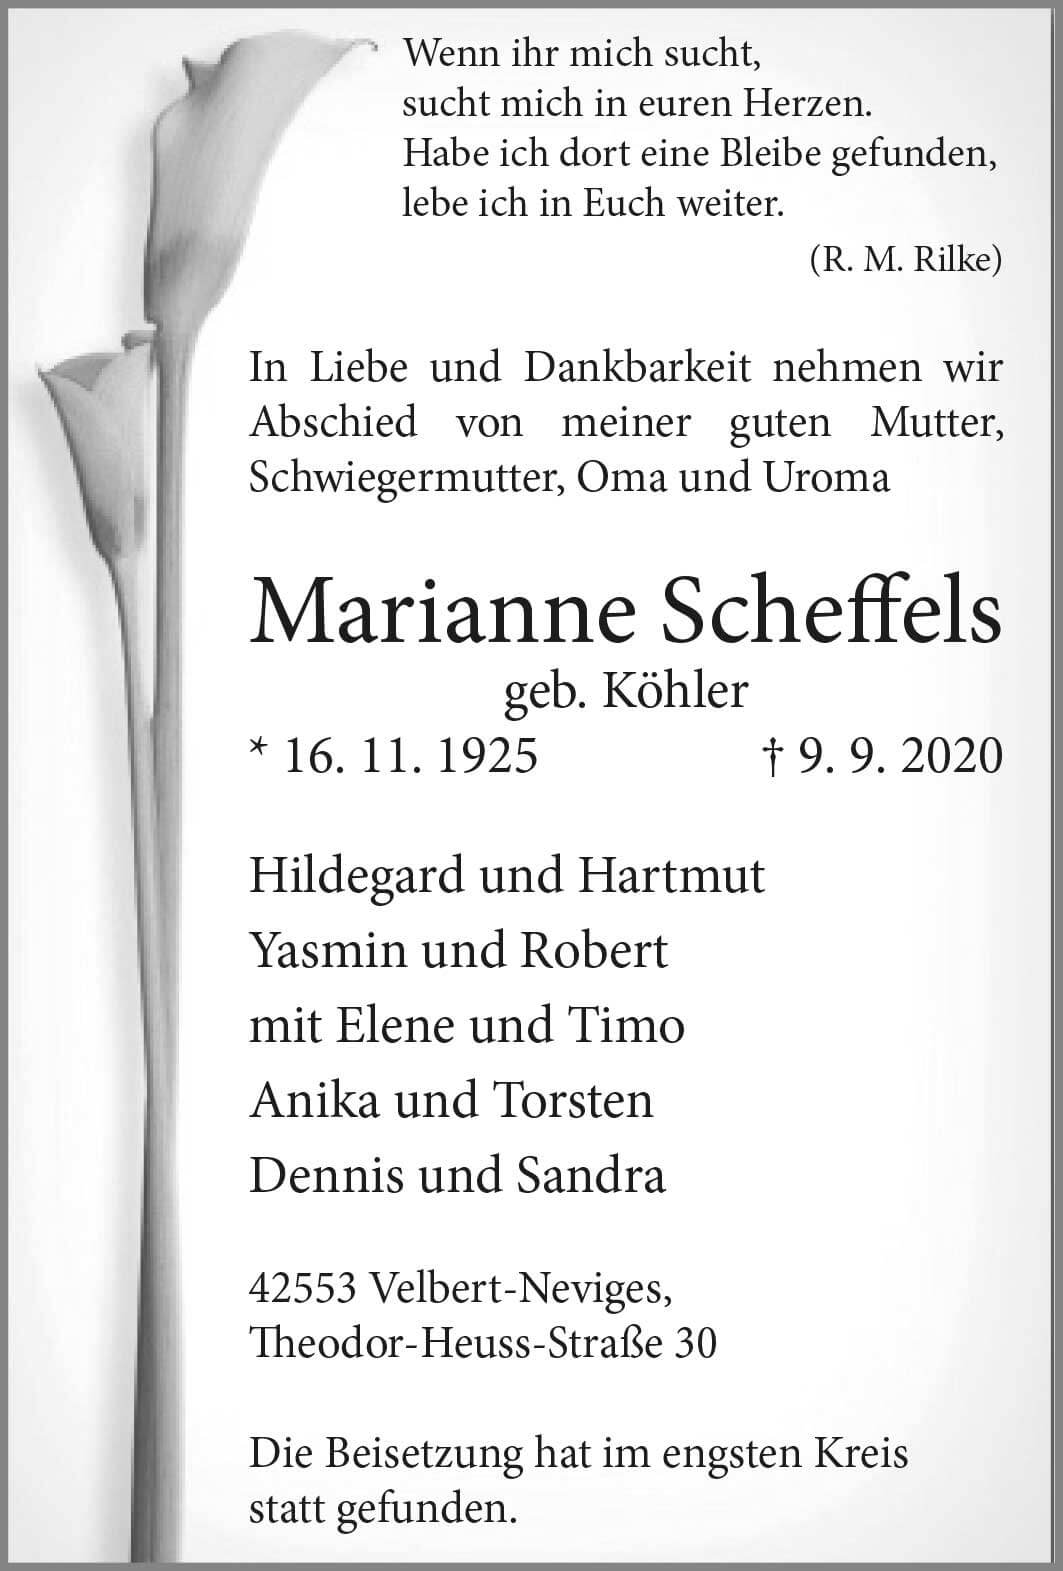 Marianne Scheffels † 9. 9. 2020